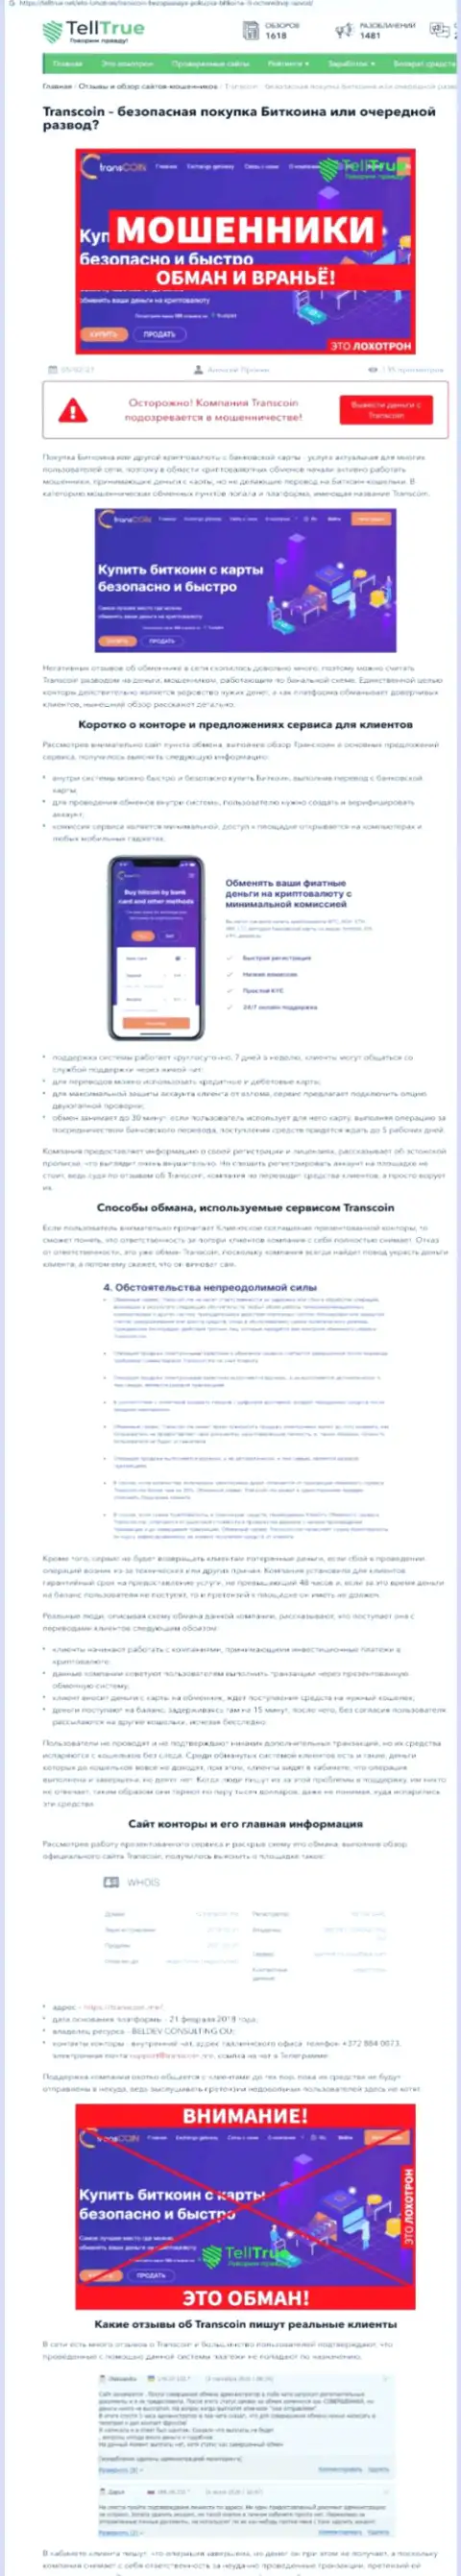 TransCoin Me - СКАМ и ГРАБЕЖ !!! (обзор организации)